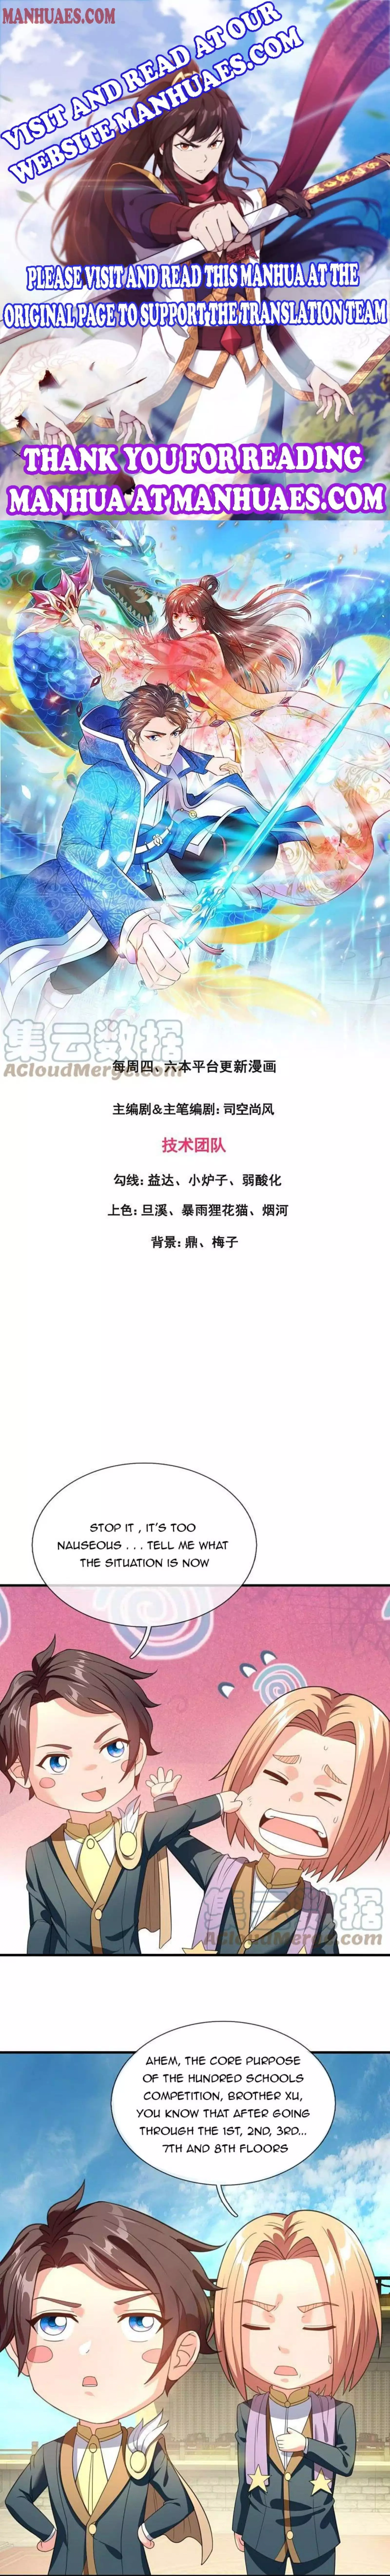 Wan Gu Shen Wang - 306 page 1-774e6a71